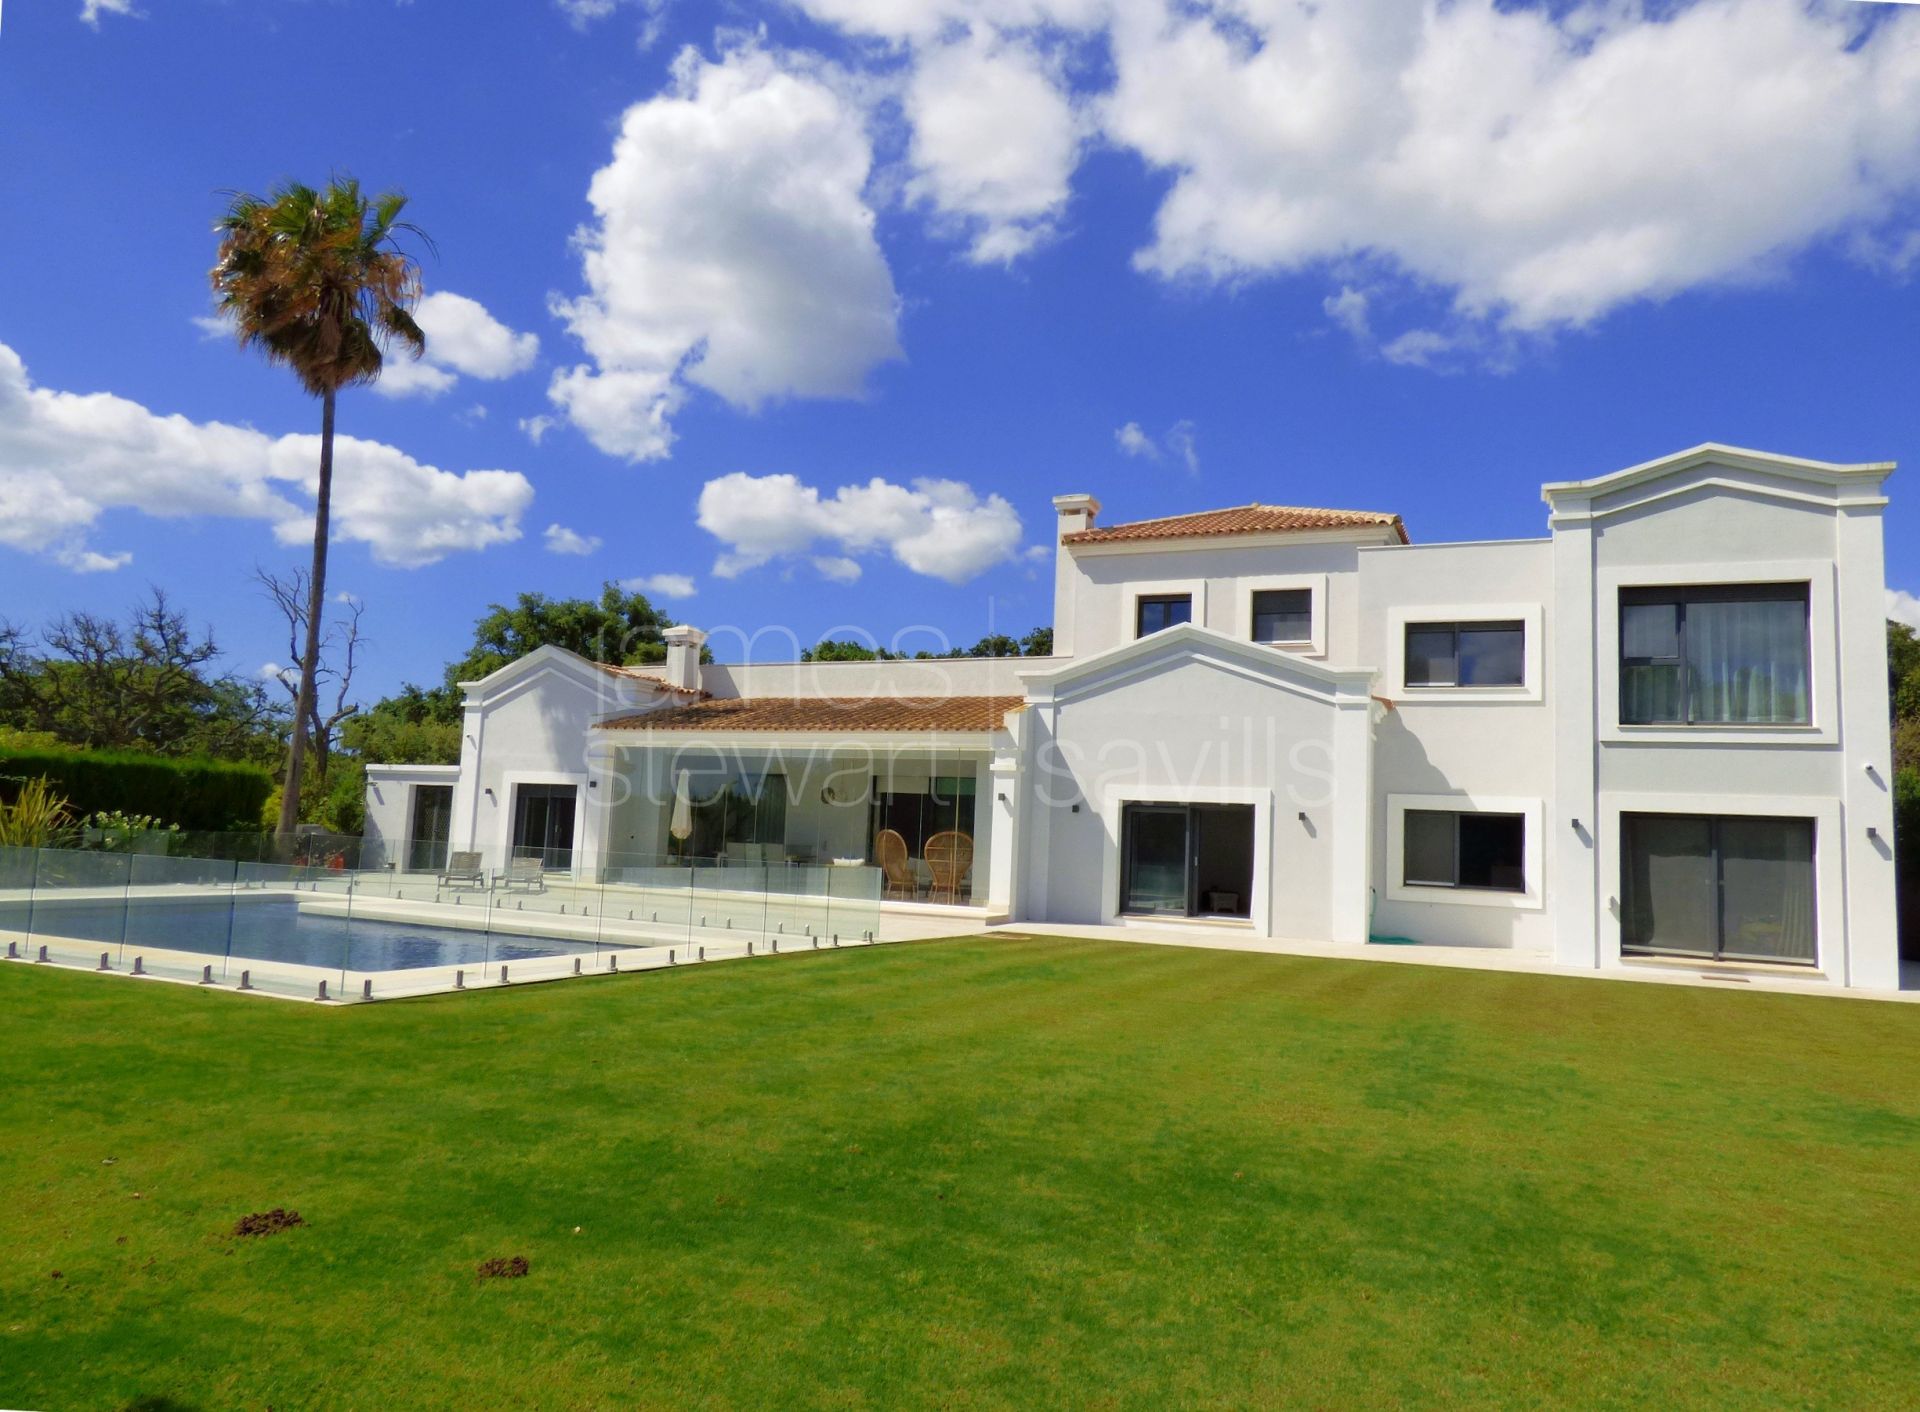 Beautiful contemporary style villa in the C zone of Sotogrande central.